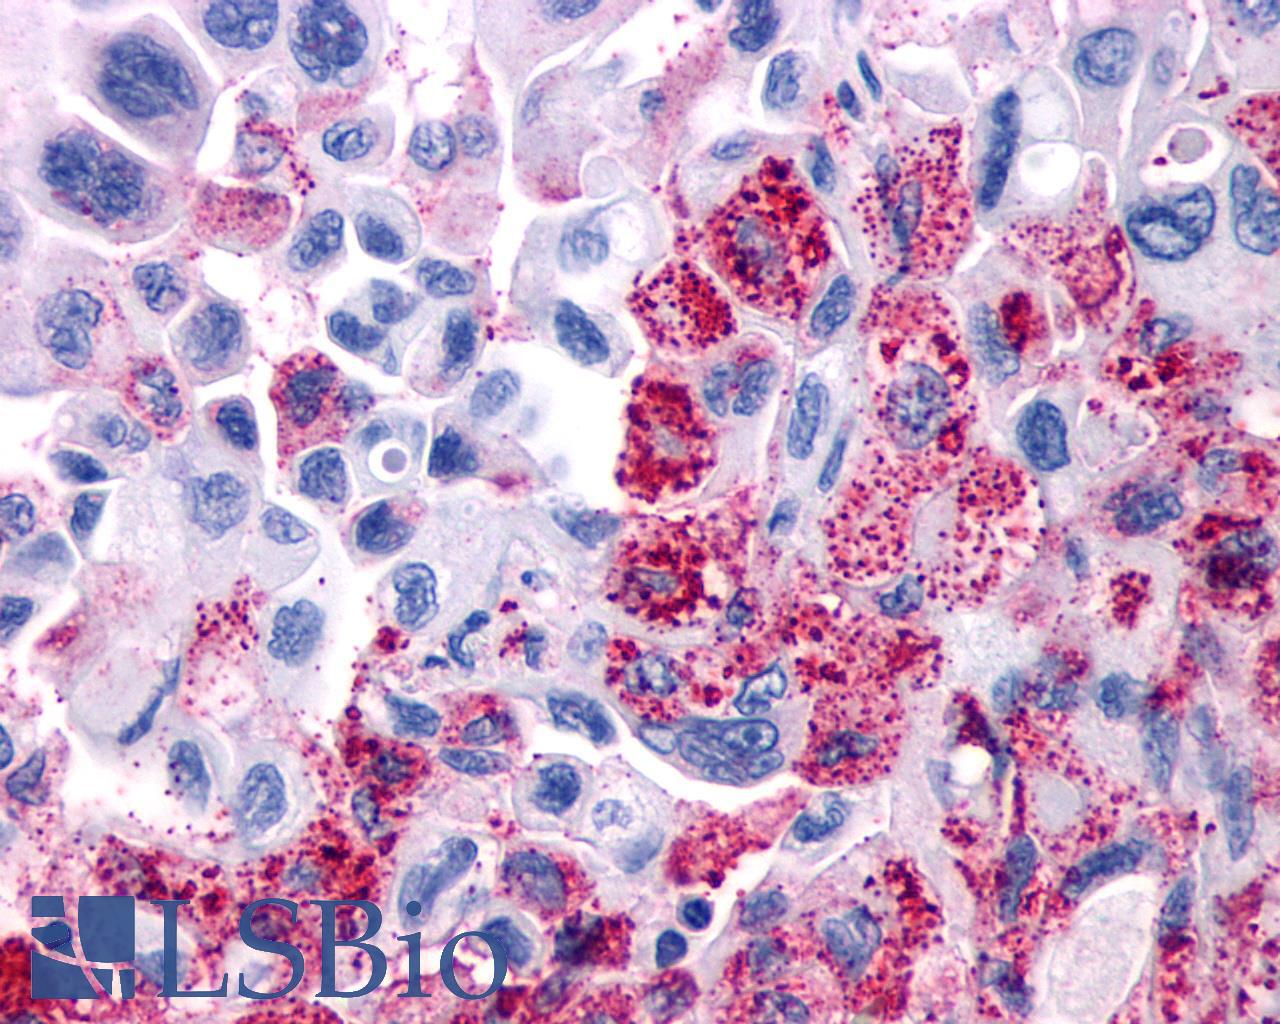 VIPR1 Antibody - Pancreas, Carcinoma